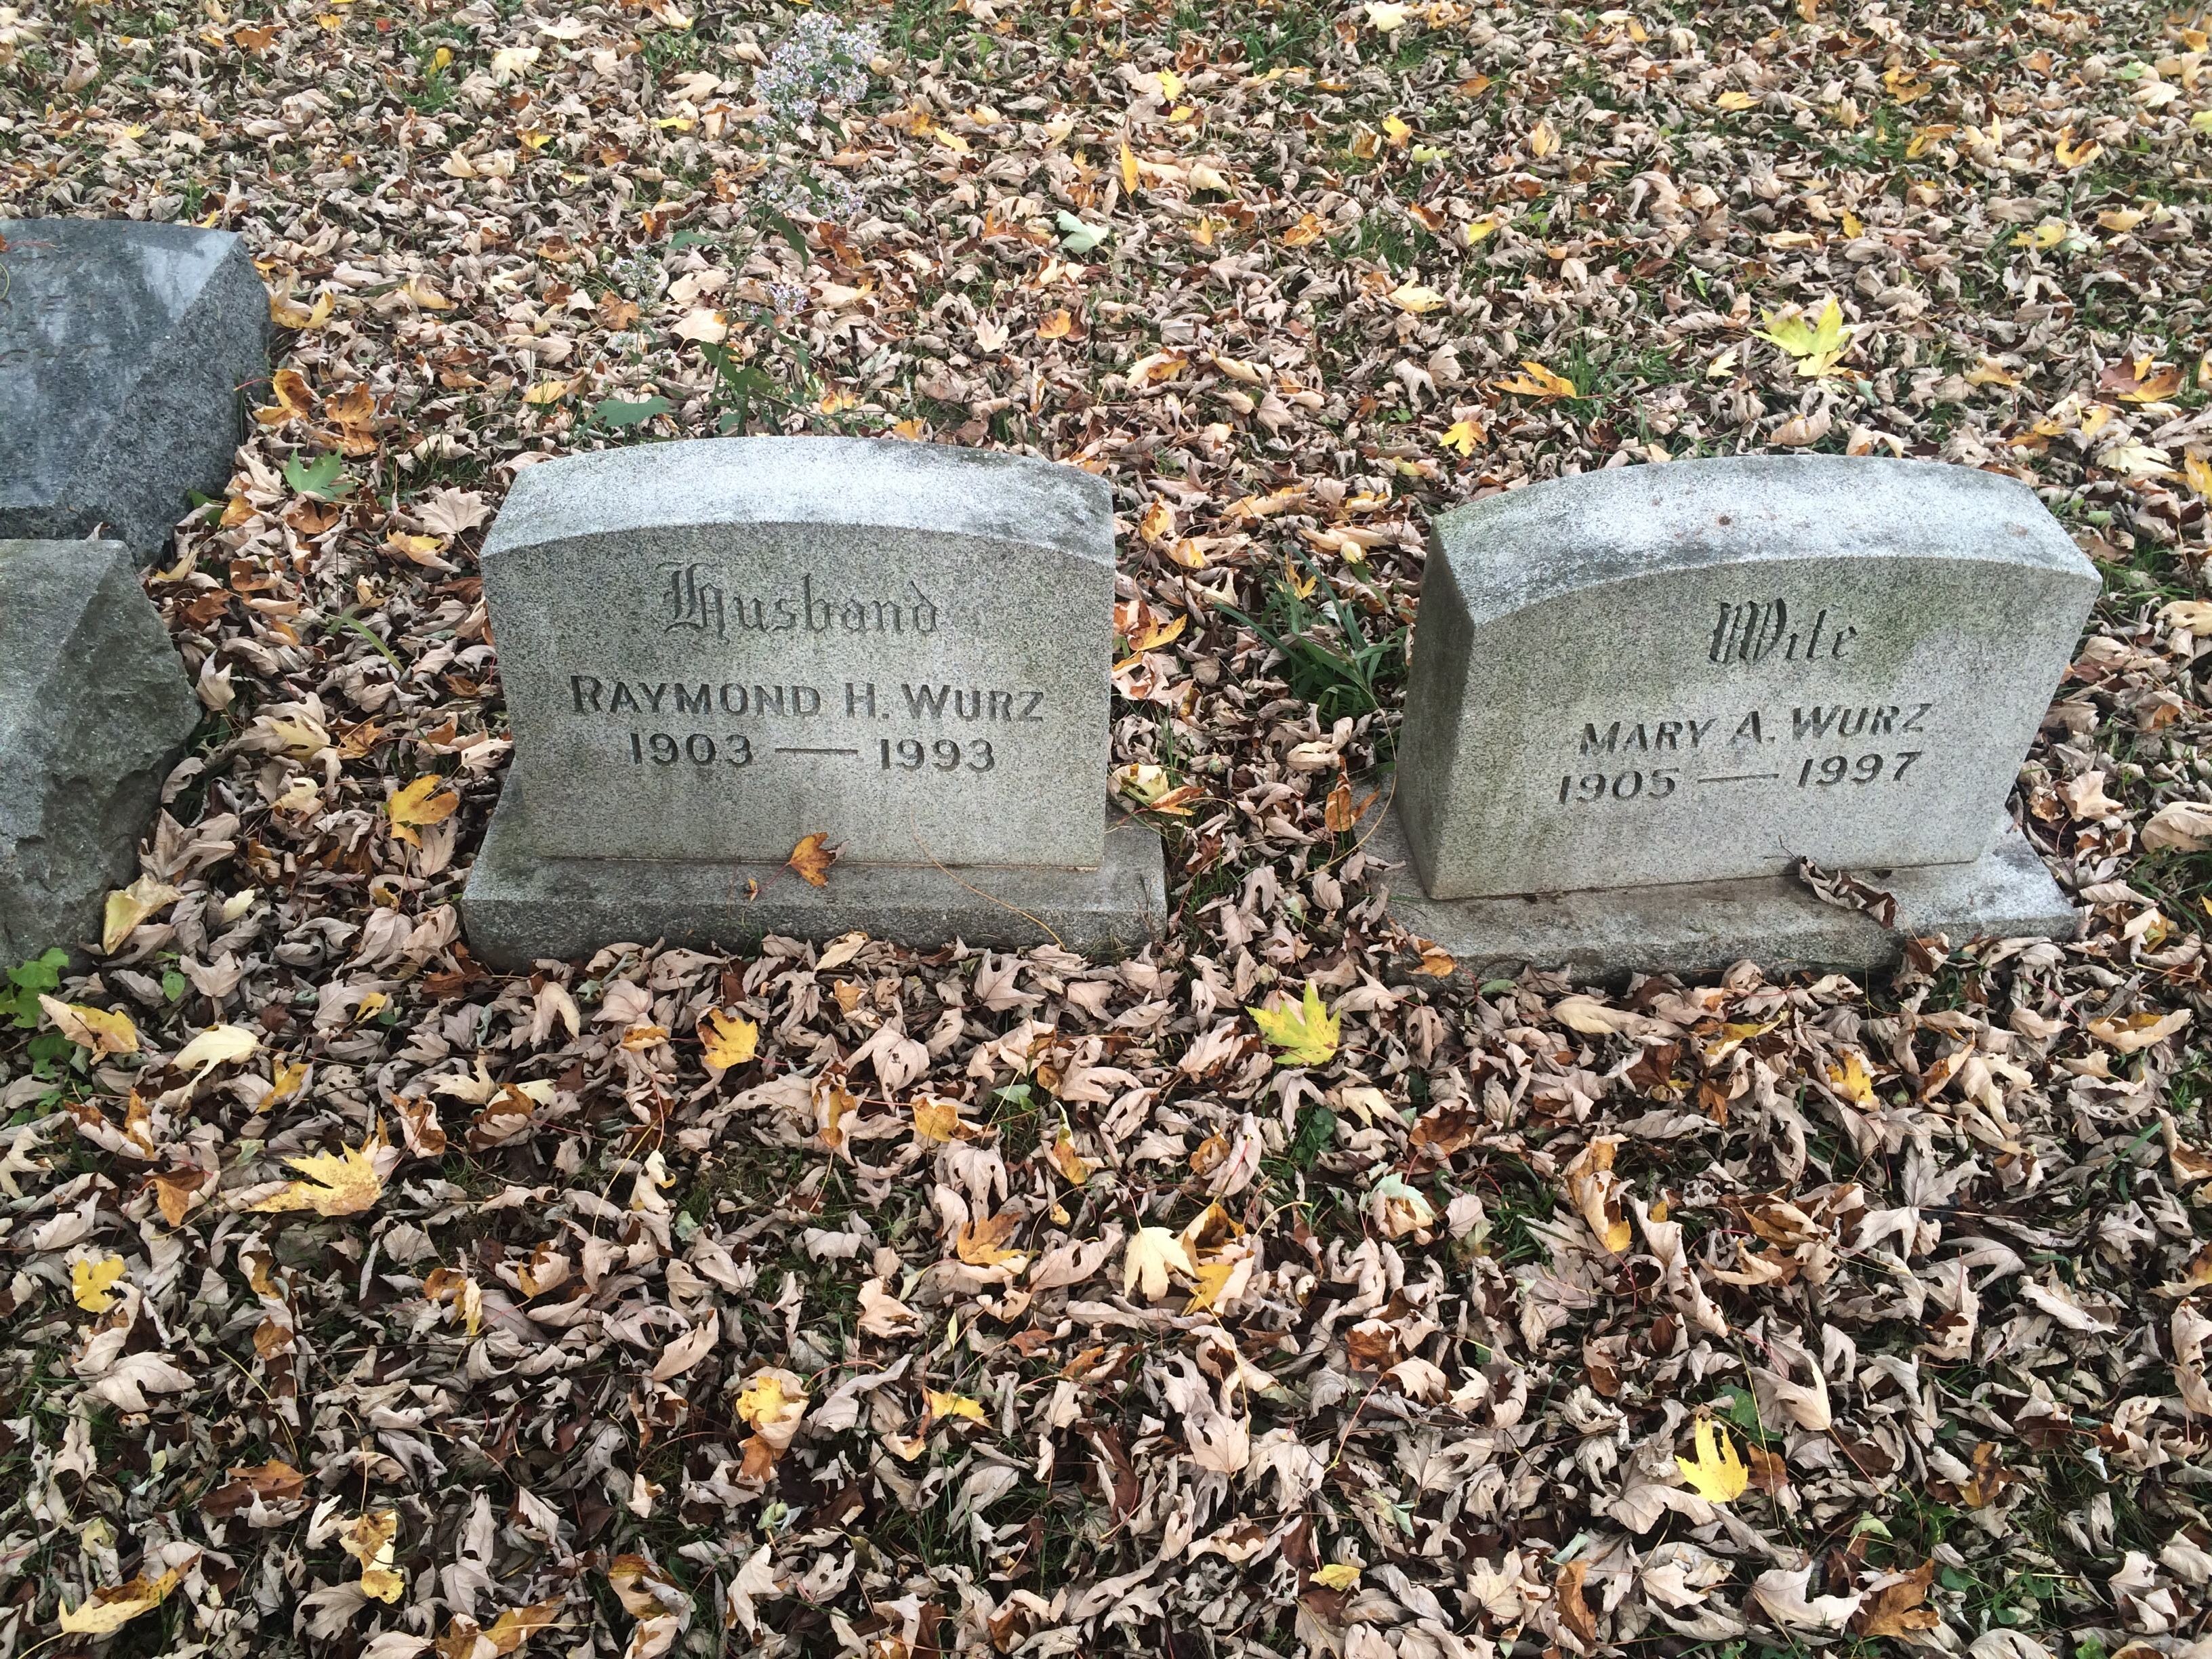 Raymond & Mary Wurz gravesite